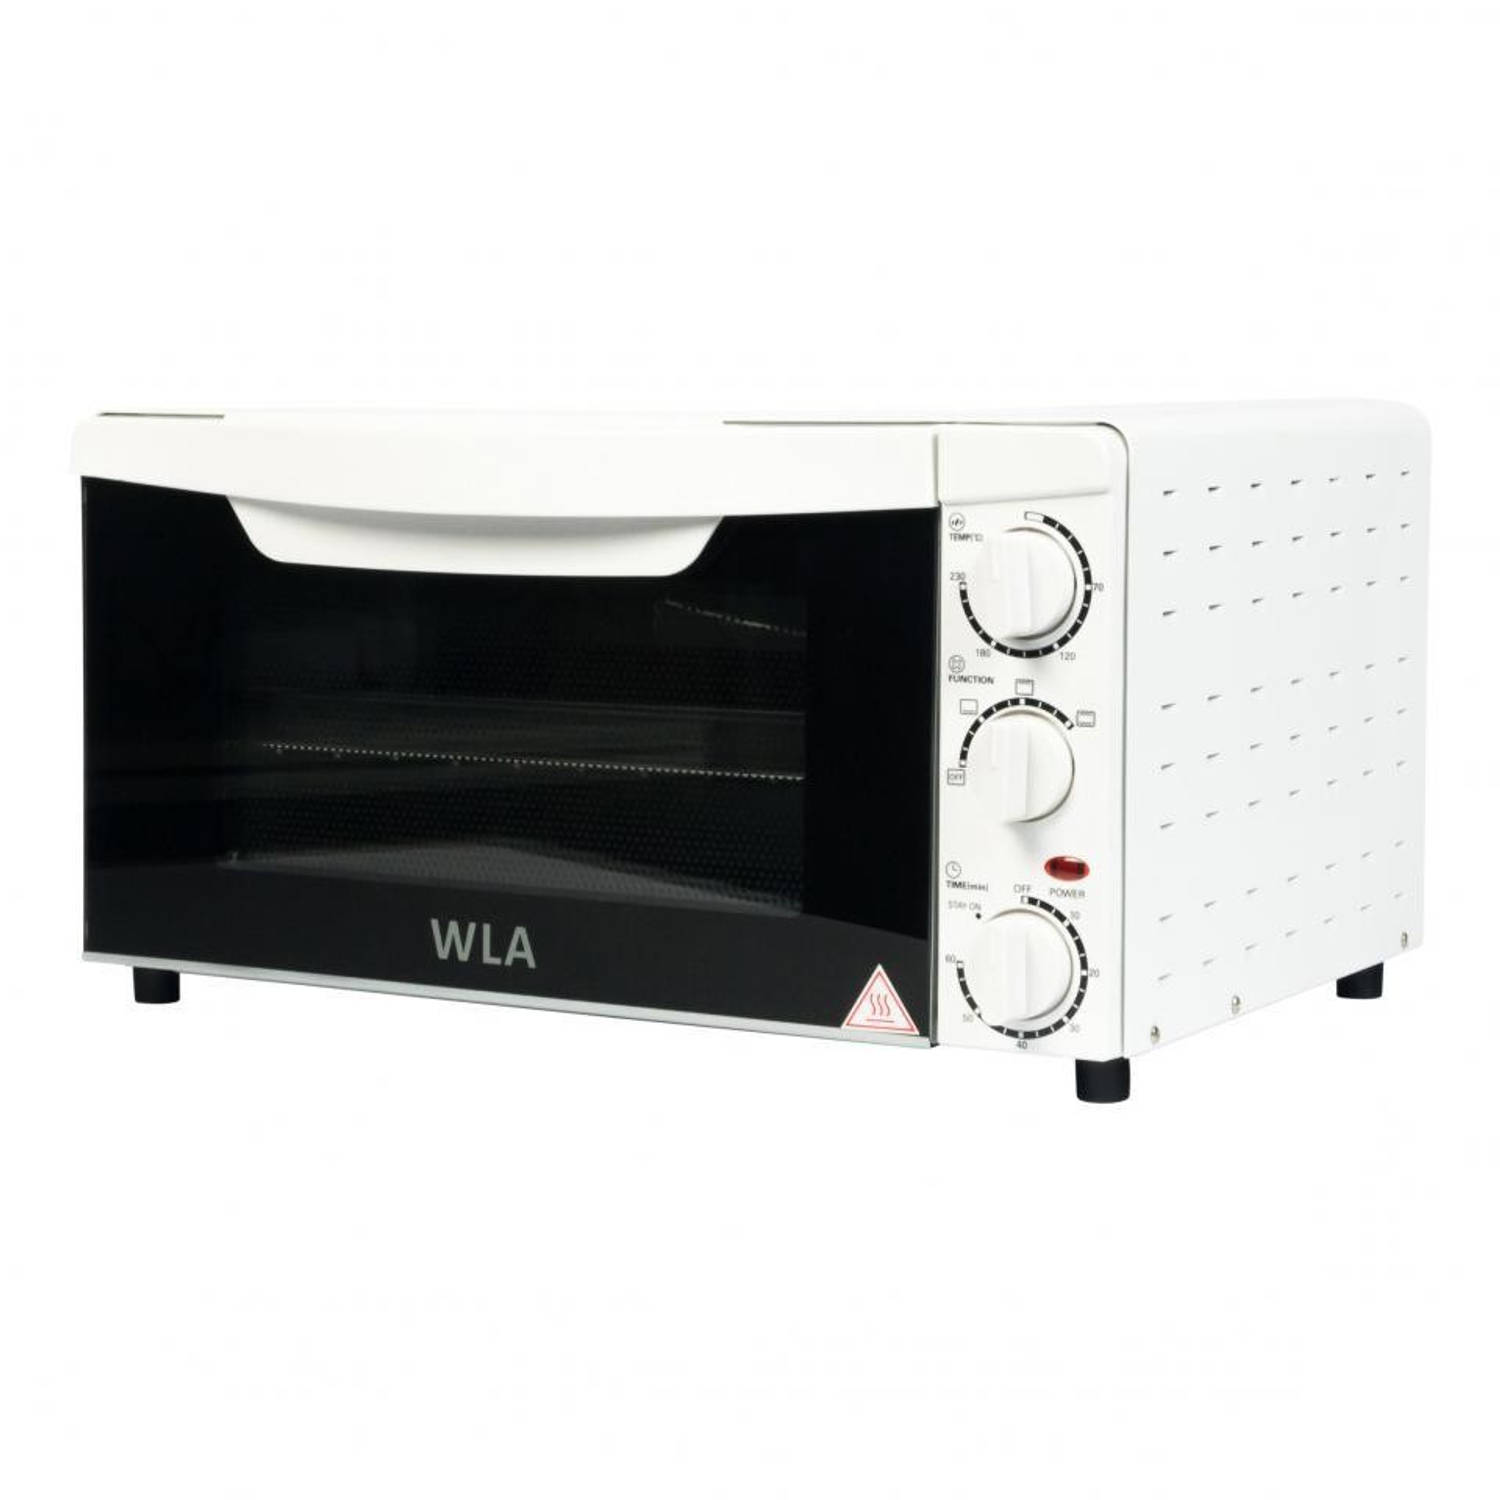 bestellen Vochtig Lijkenhuis WLA mini-oven 18OVW650 - 18 liter | Blokker